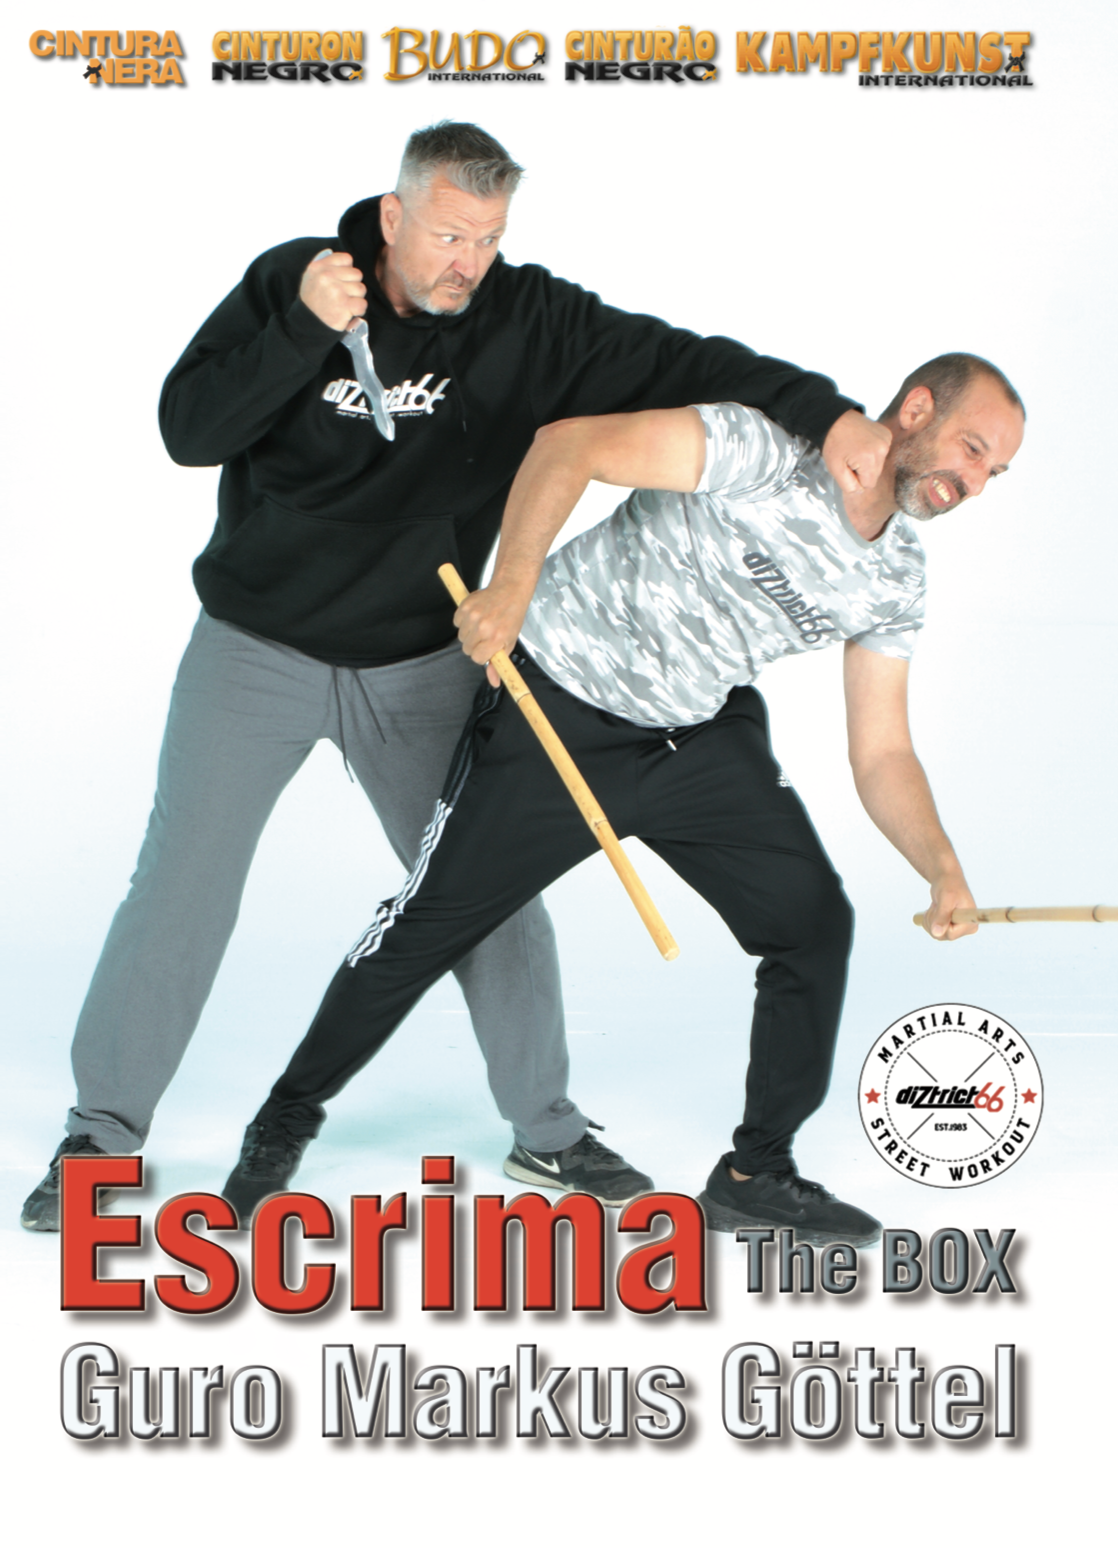 Escrima the Box DVD by Markus Gottel